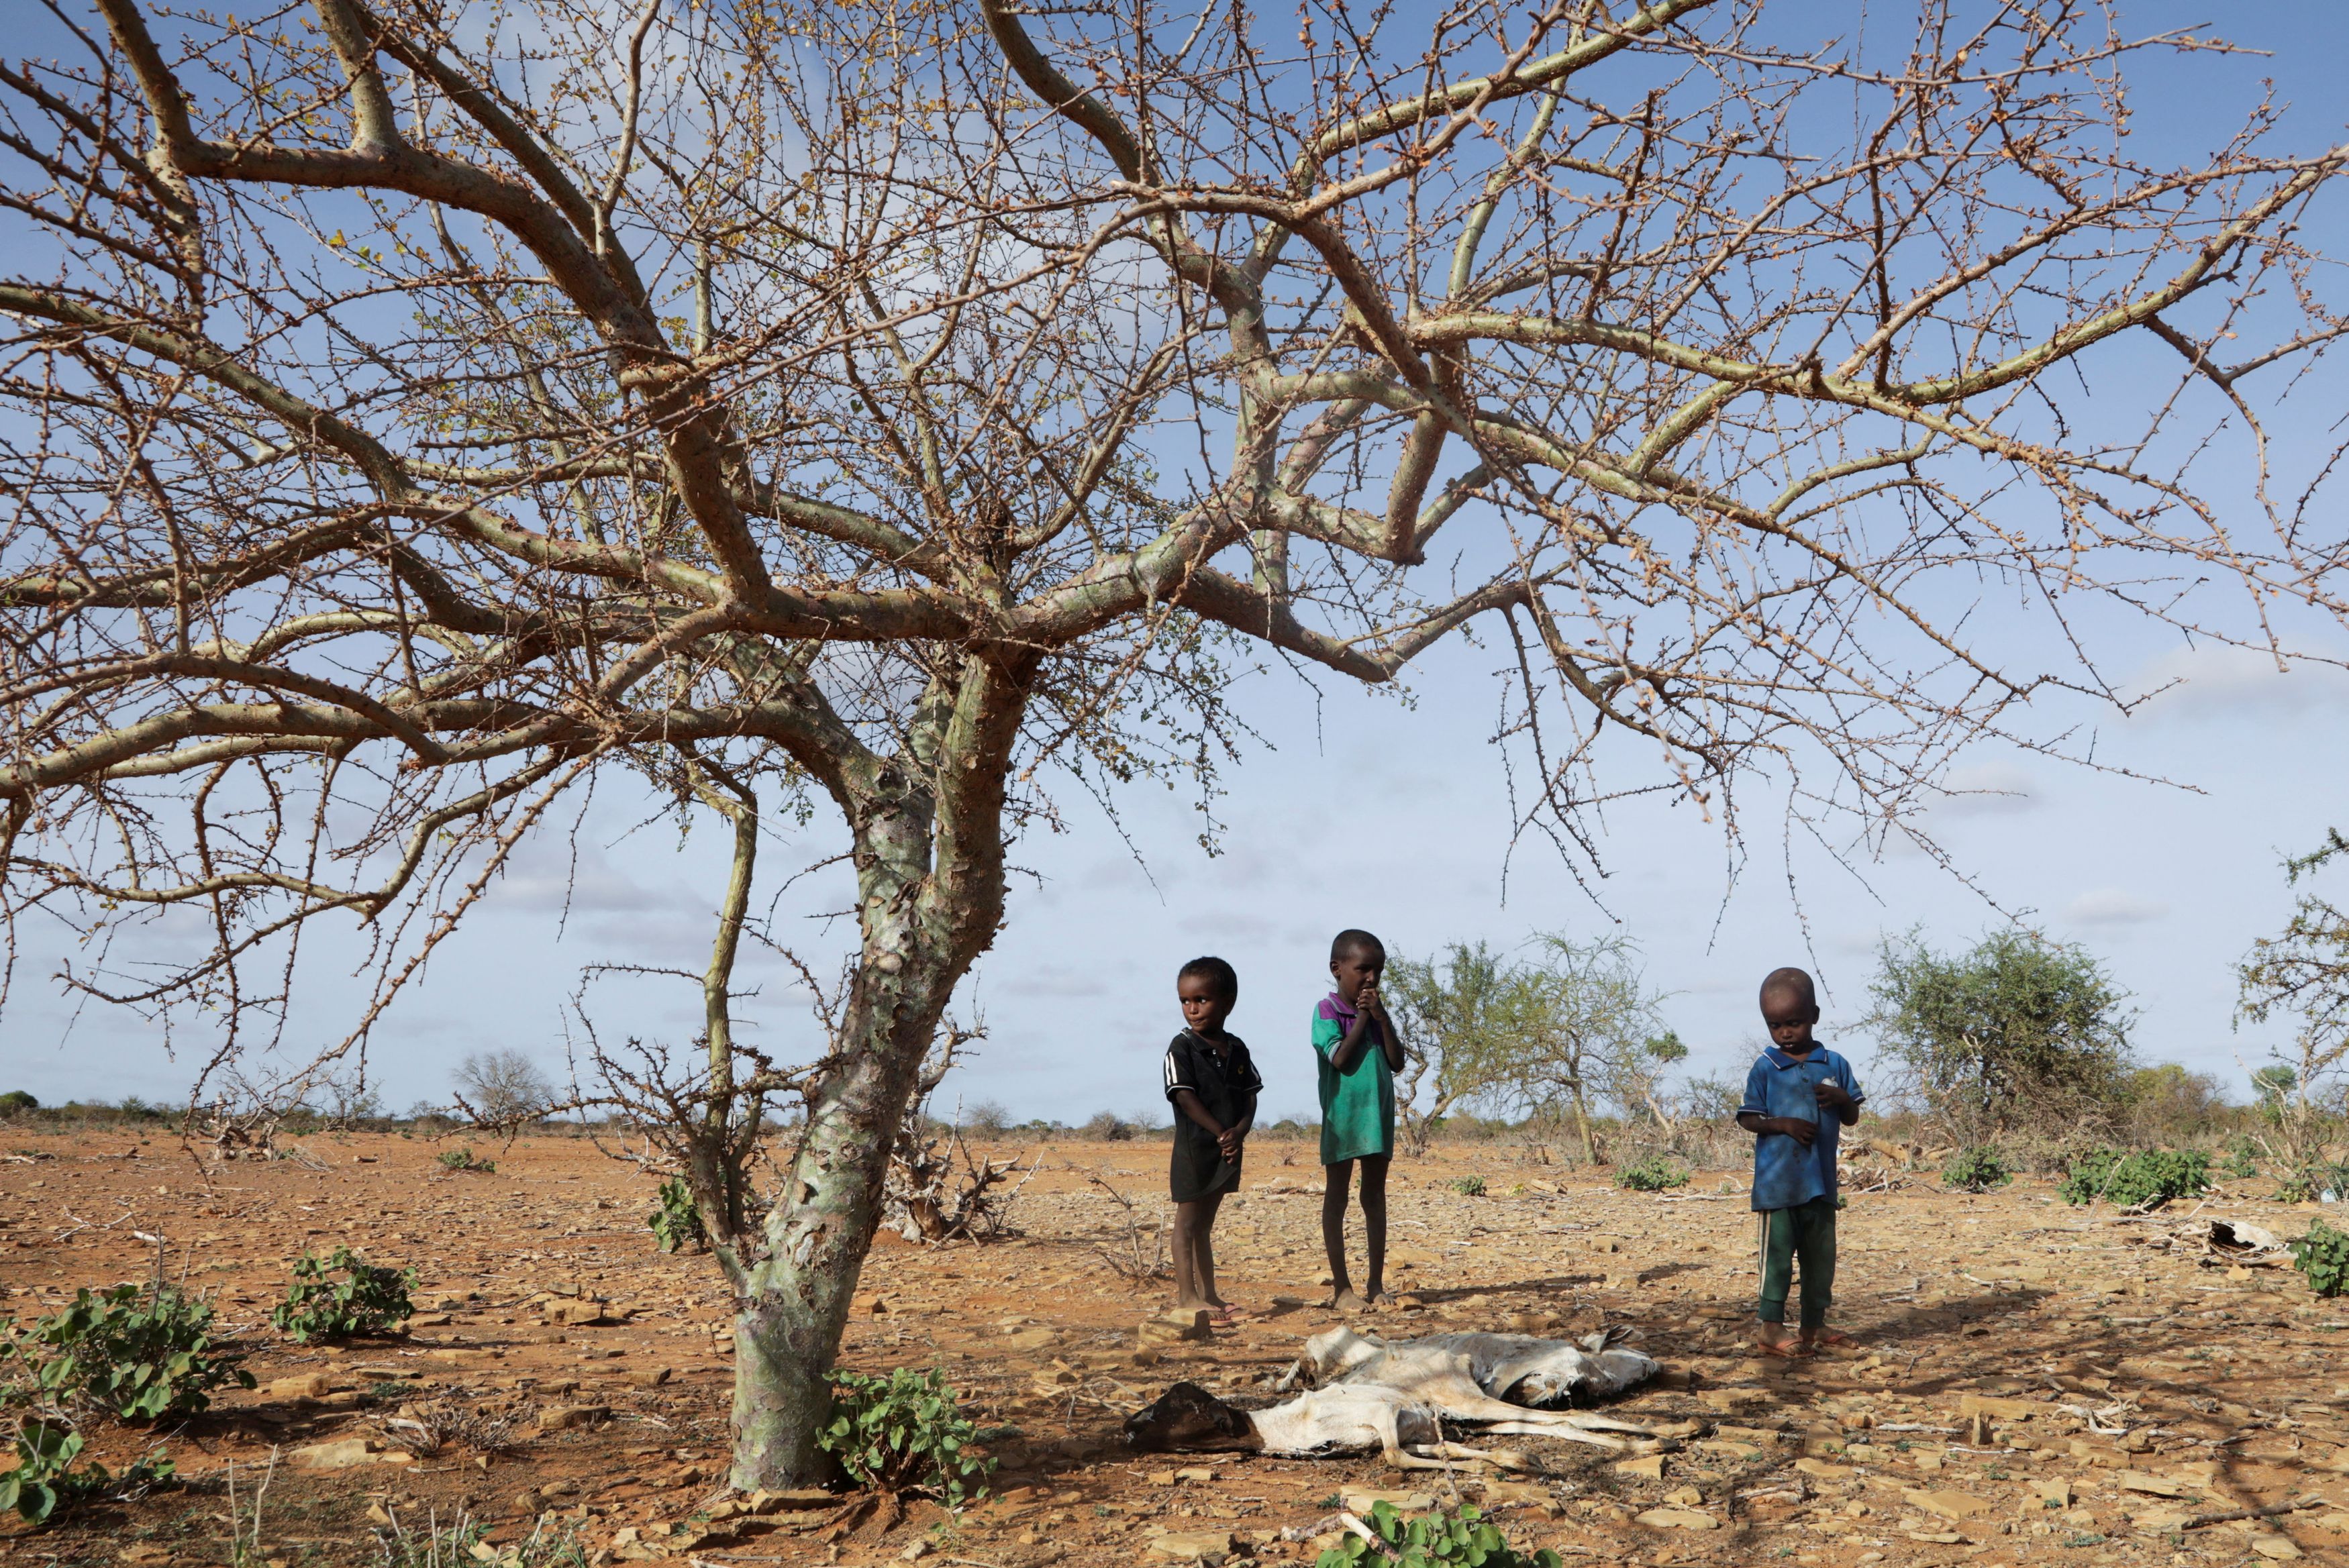 Σομαλία, η χώρα που πεθαίνει από τις εκπομπές άνθρακα των άλλων